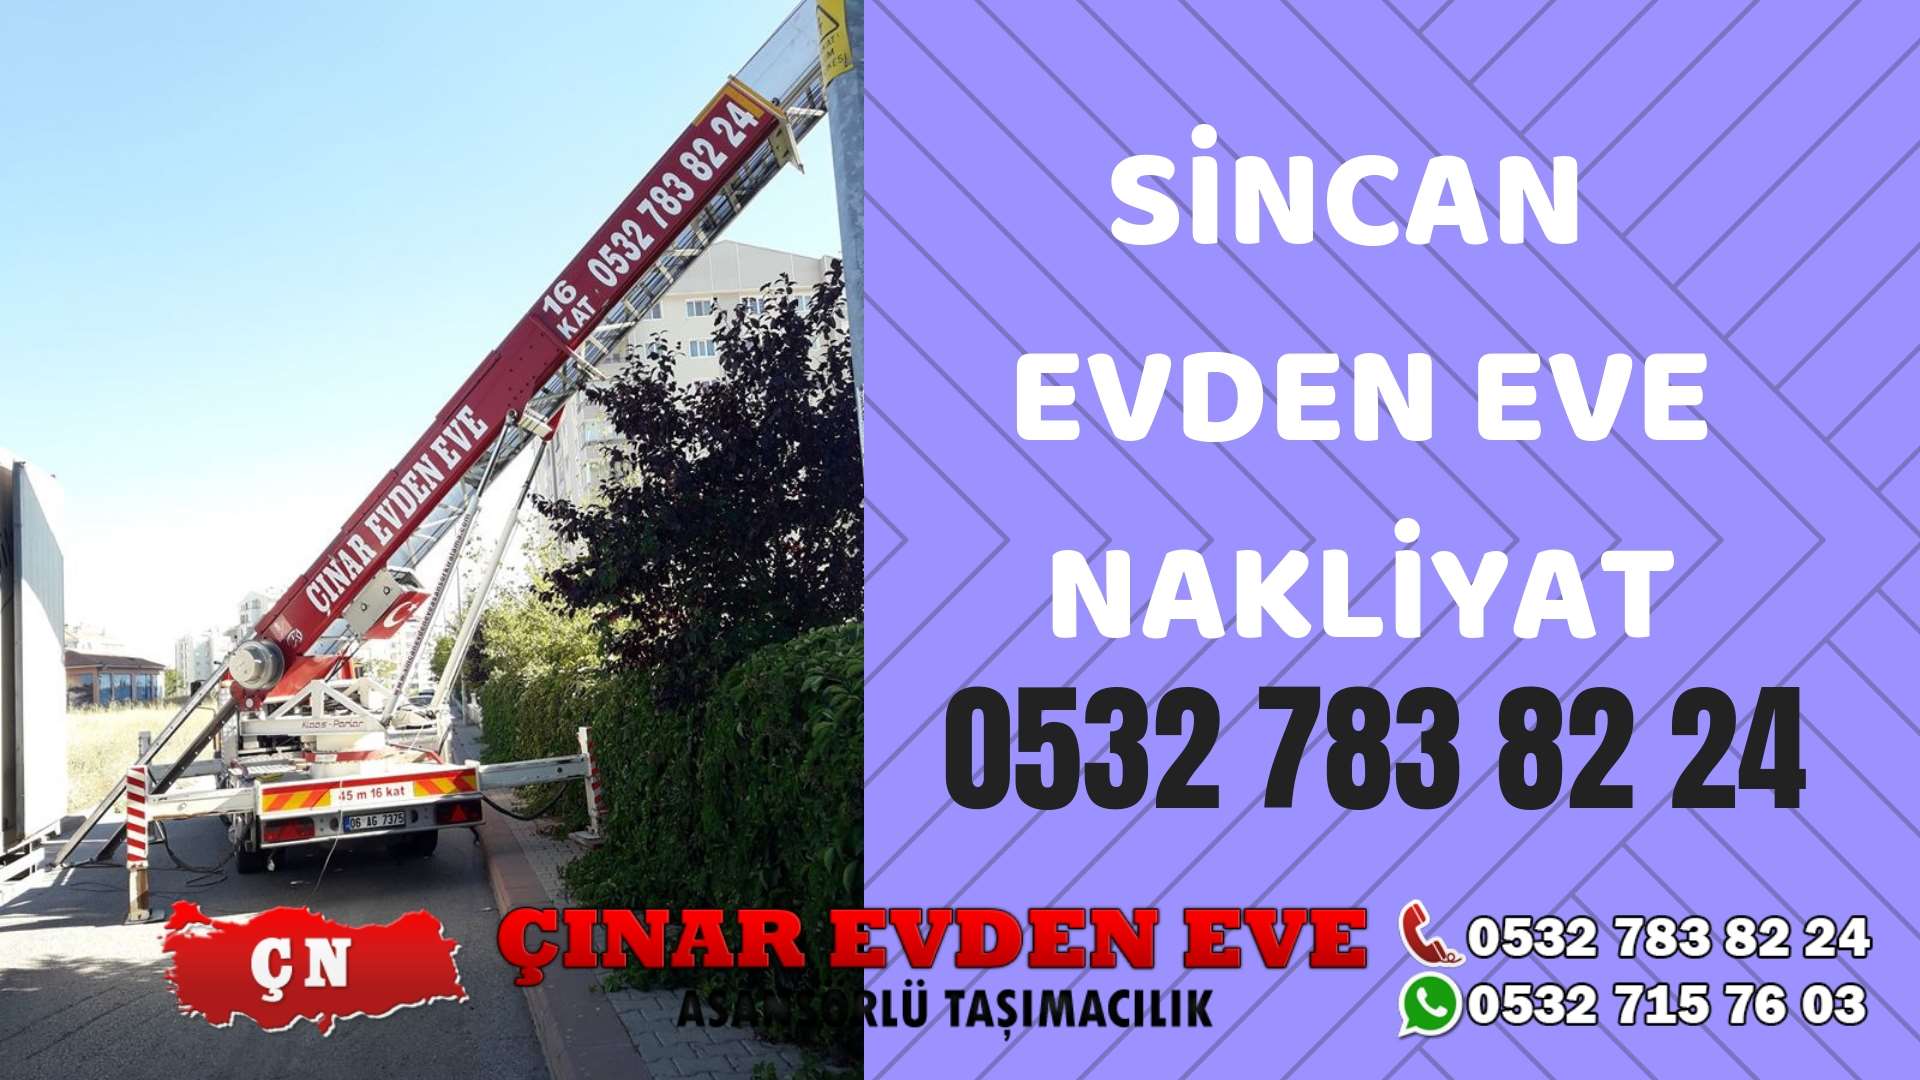 Ankara Sincan Sincan evden eve asansörlü nakliyat en ucuz nakliye 0532 715 76 03